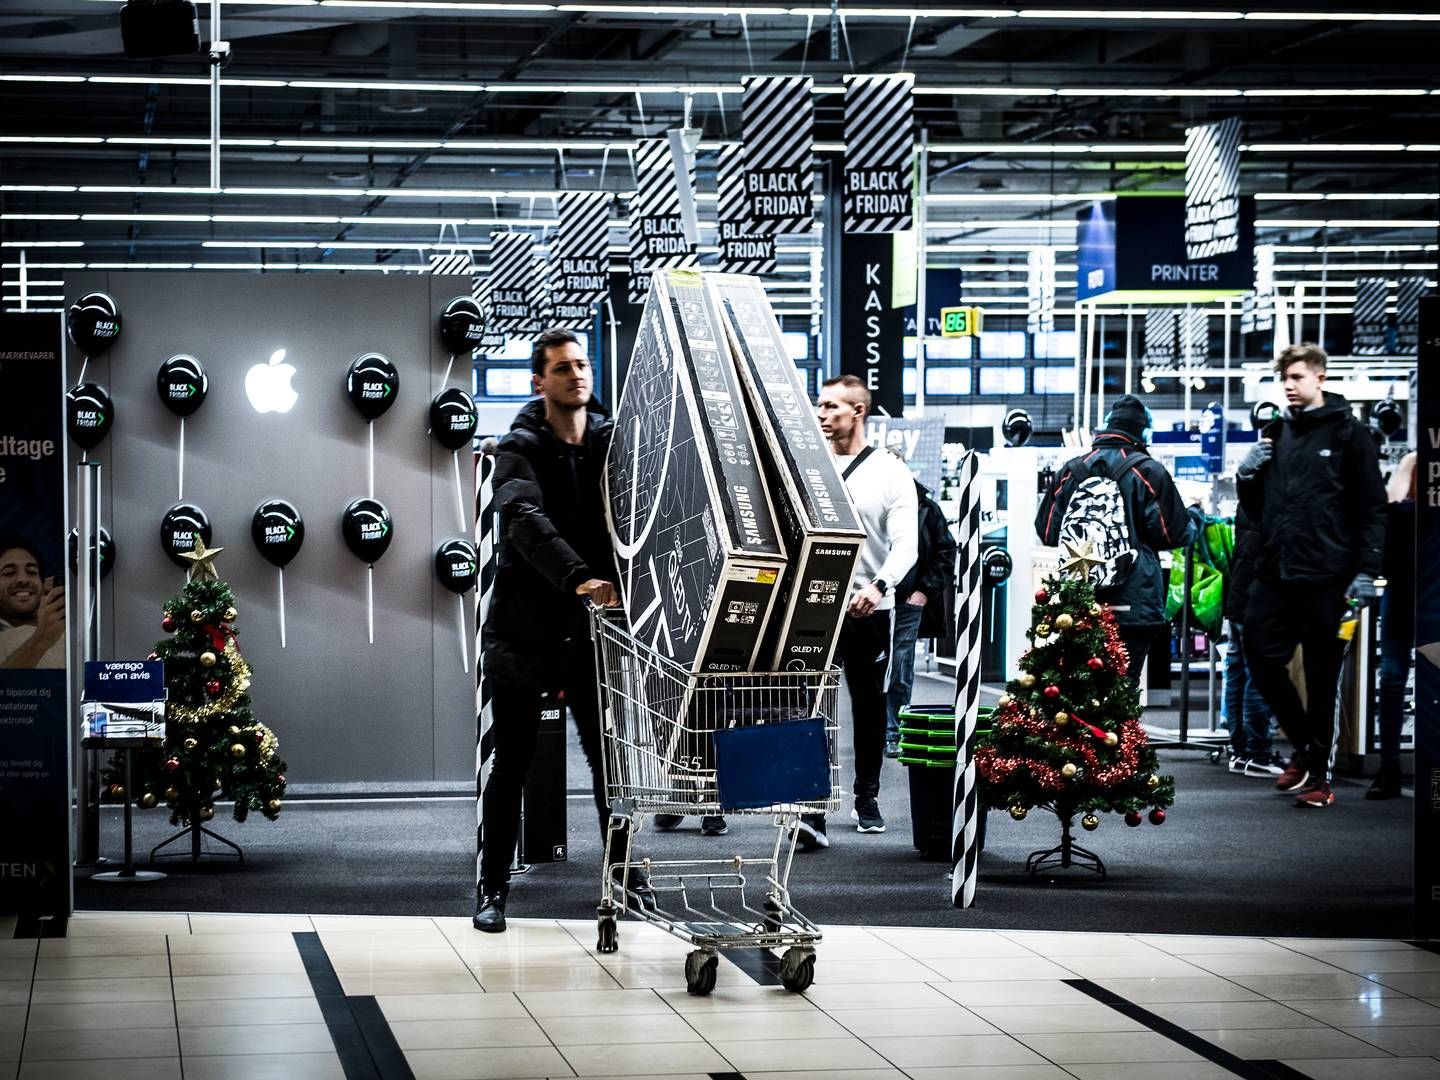 Udover at sælge deres varer digitalt kan butikkerne også bruge Zliide til at skræddersy tilbud, kampagner og aktiviteter ud fra købsmønstrene hos den enkelte kunde. | Foto: Jonas Olufson